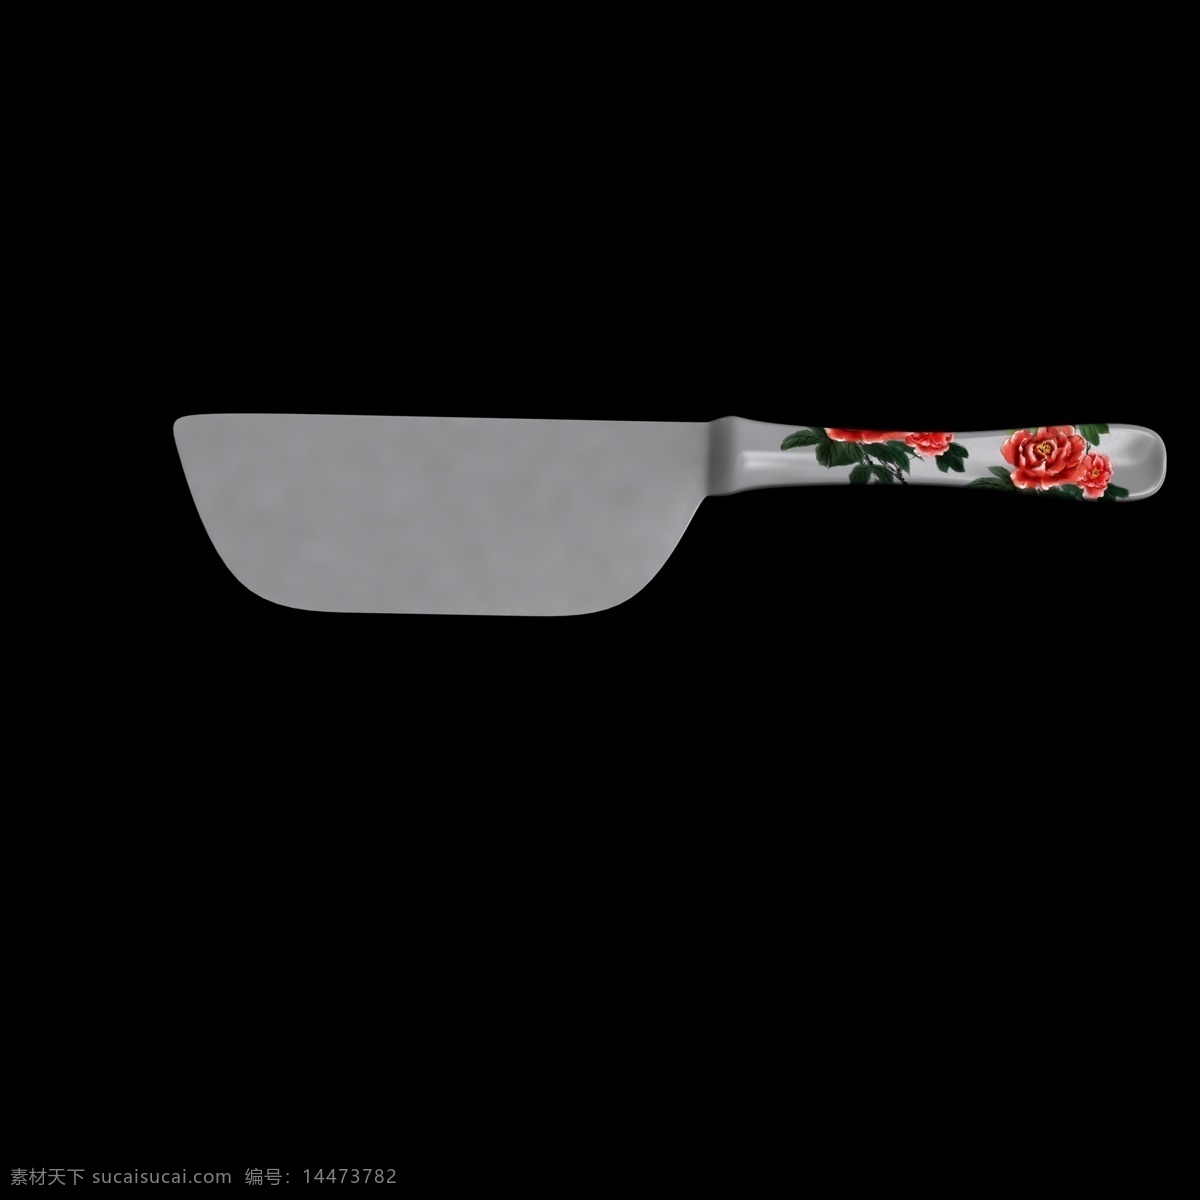 印花 创意 刀柄 插图 刀子 厨房用具插图 c4d 立体 印花刀具 大刀插图